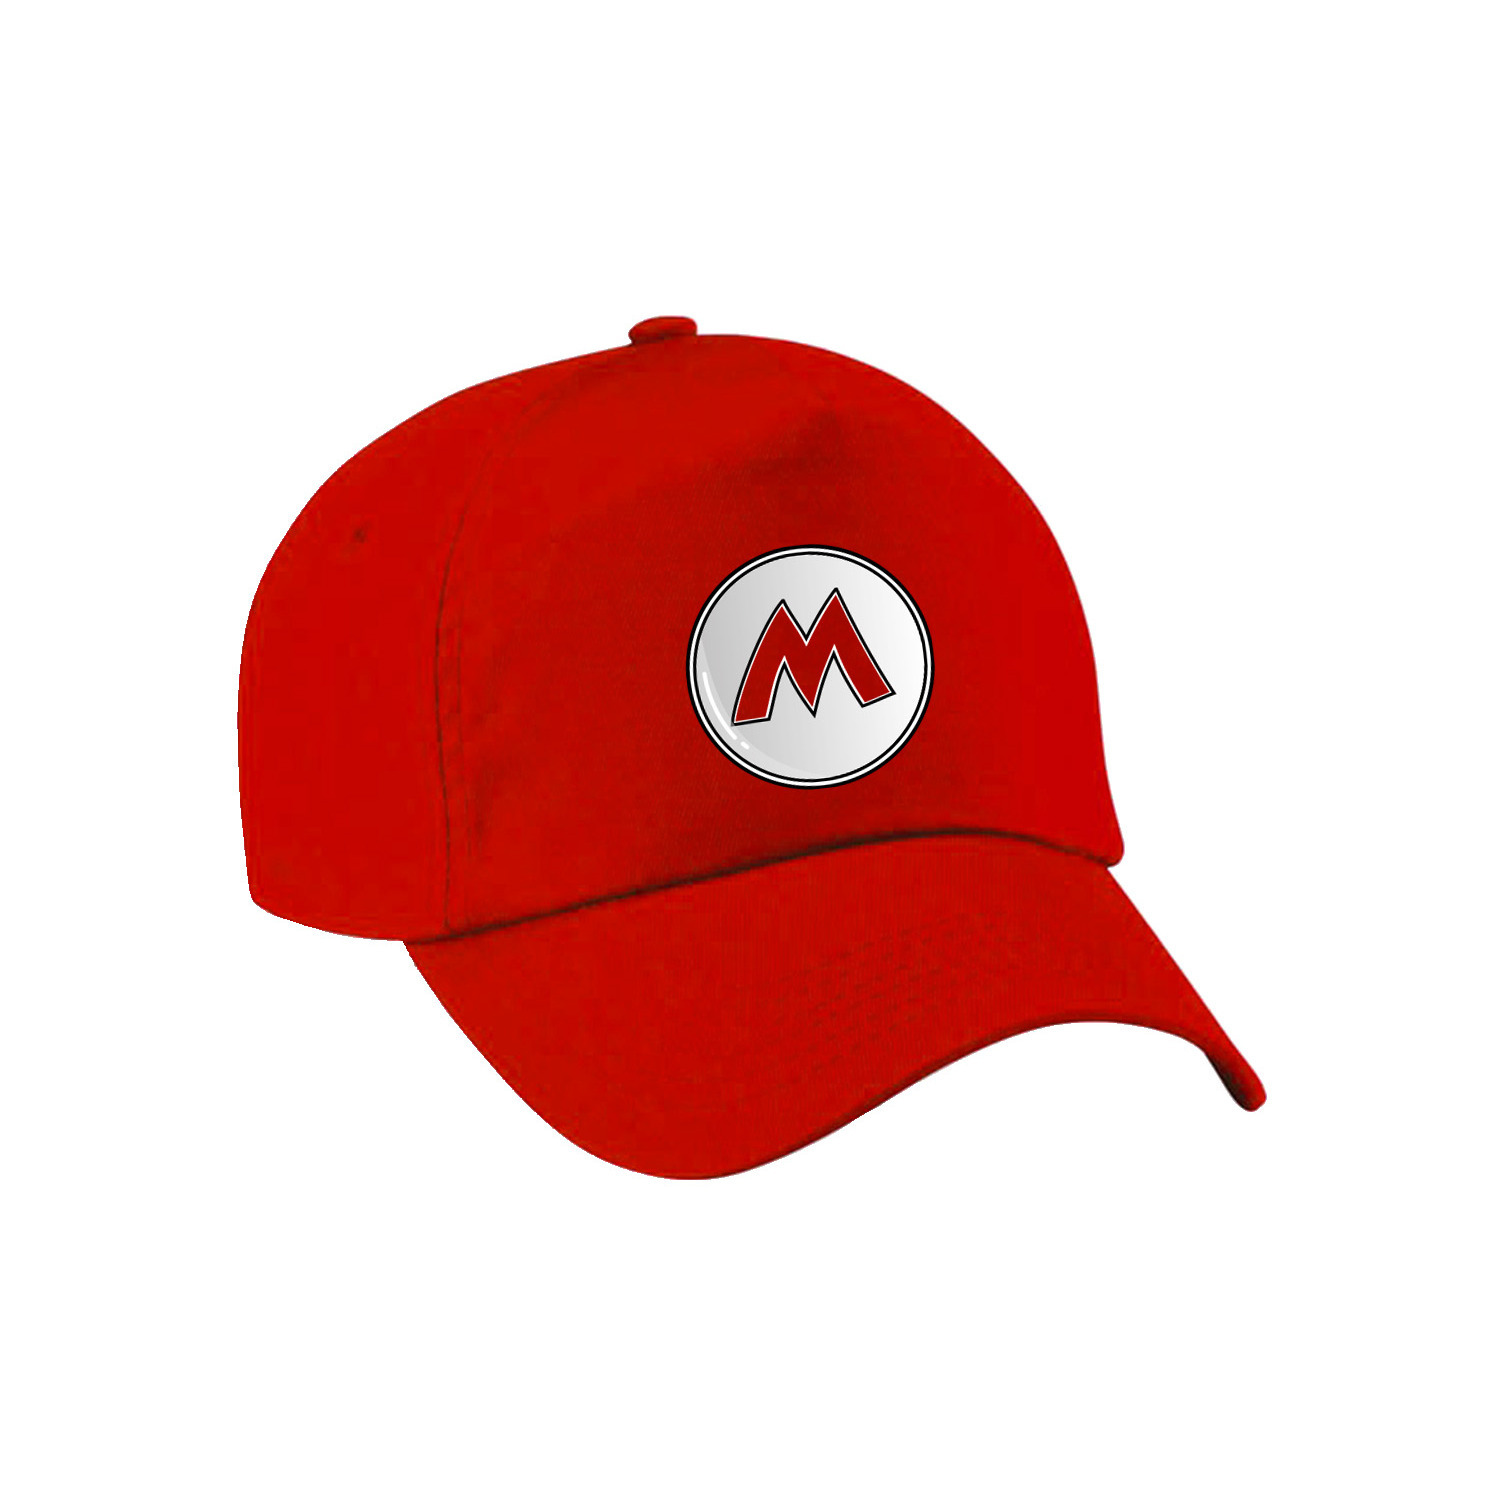 Afbeelding van Game verkleed pet - loodgieter Mario - rood - kinderen - unisex - carnaval/themafeest outfit